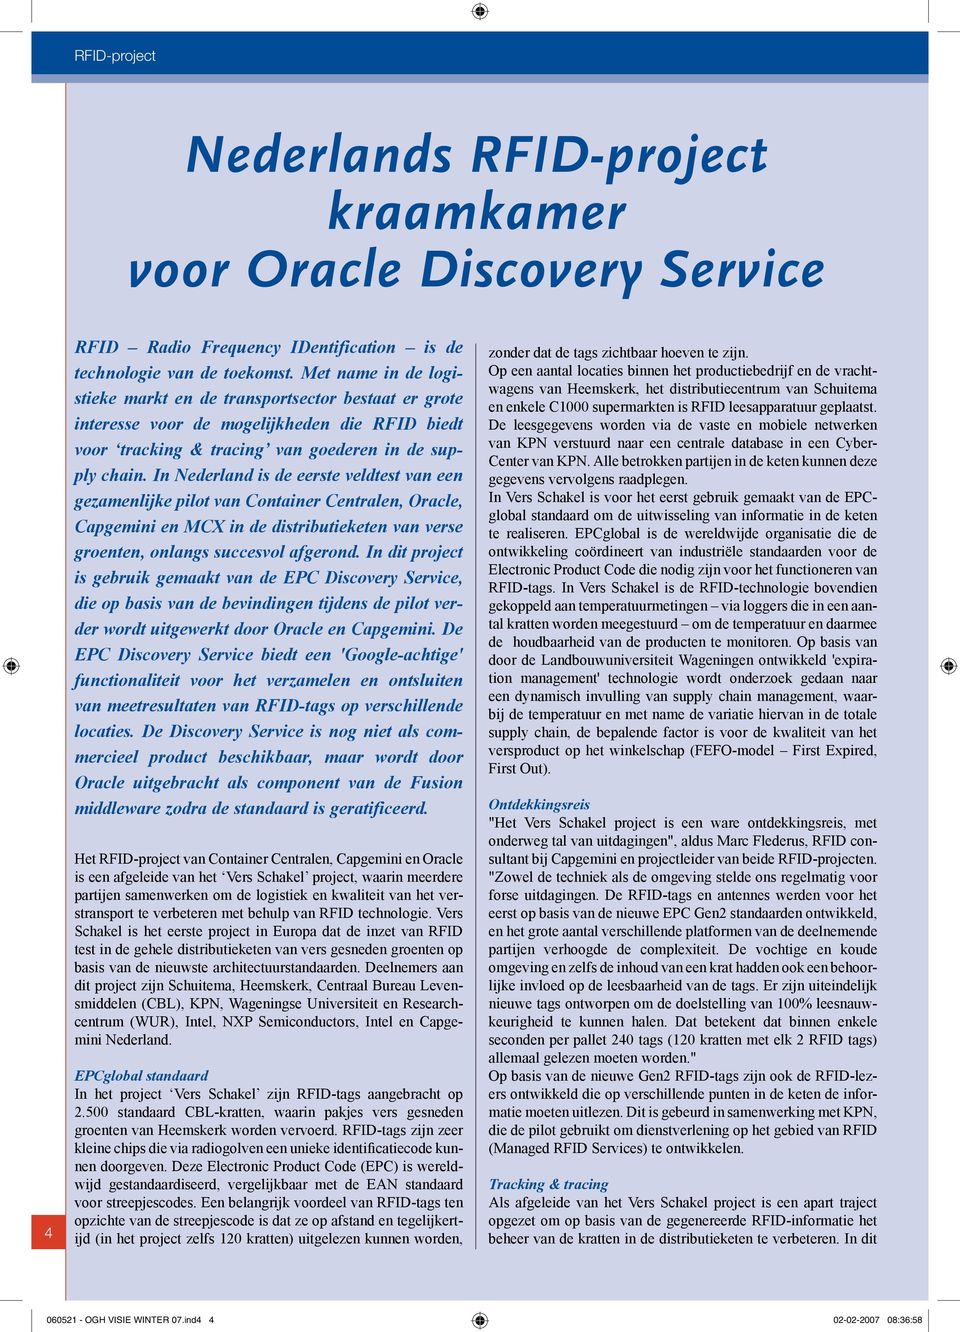 In Nederland is de eerste veldtest van een gezamenlijke pilot van Container Centralen, Oracle, Capgemini en MCX in de distributieketen van verse groenten, onlangs succesvol afgerond.